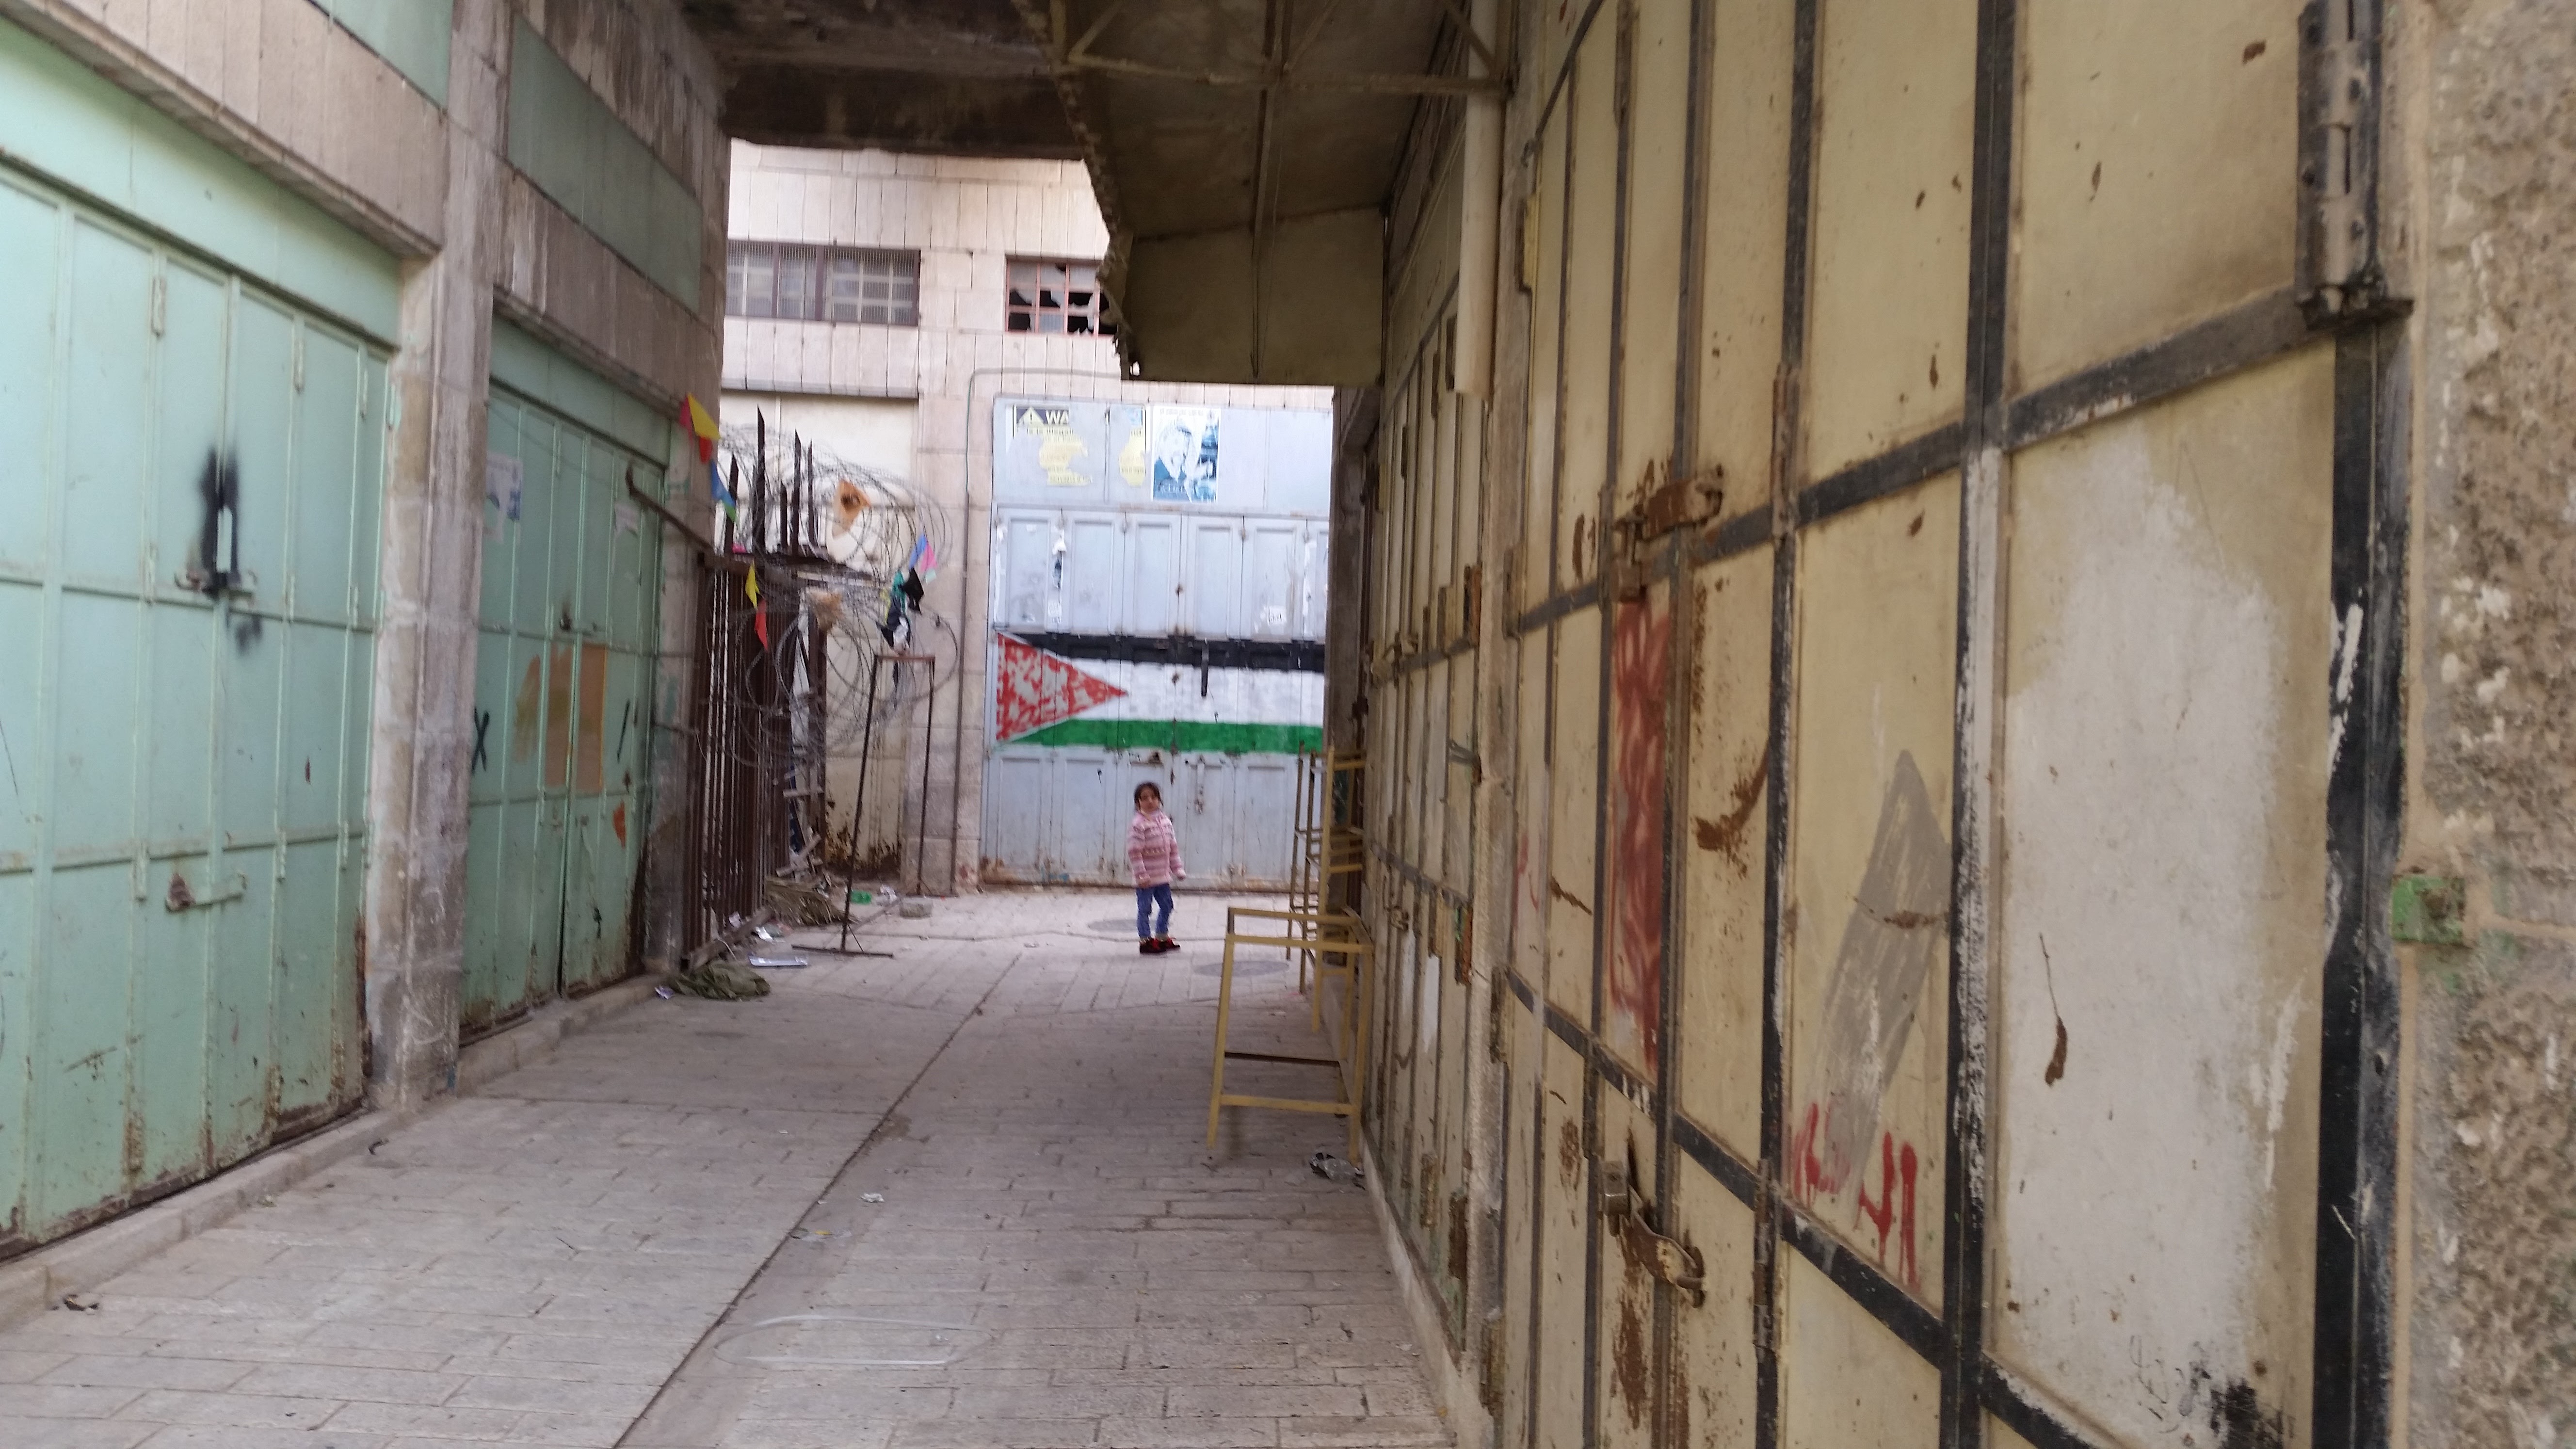 Bezárt üzletek a régi piac negyedben, Hebronban, a palesztinok által lakott területen.